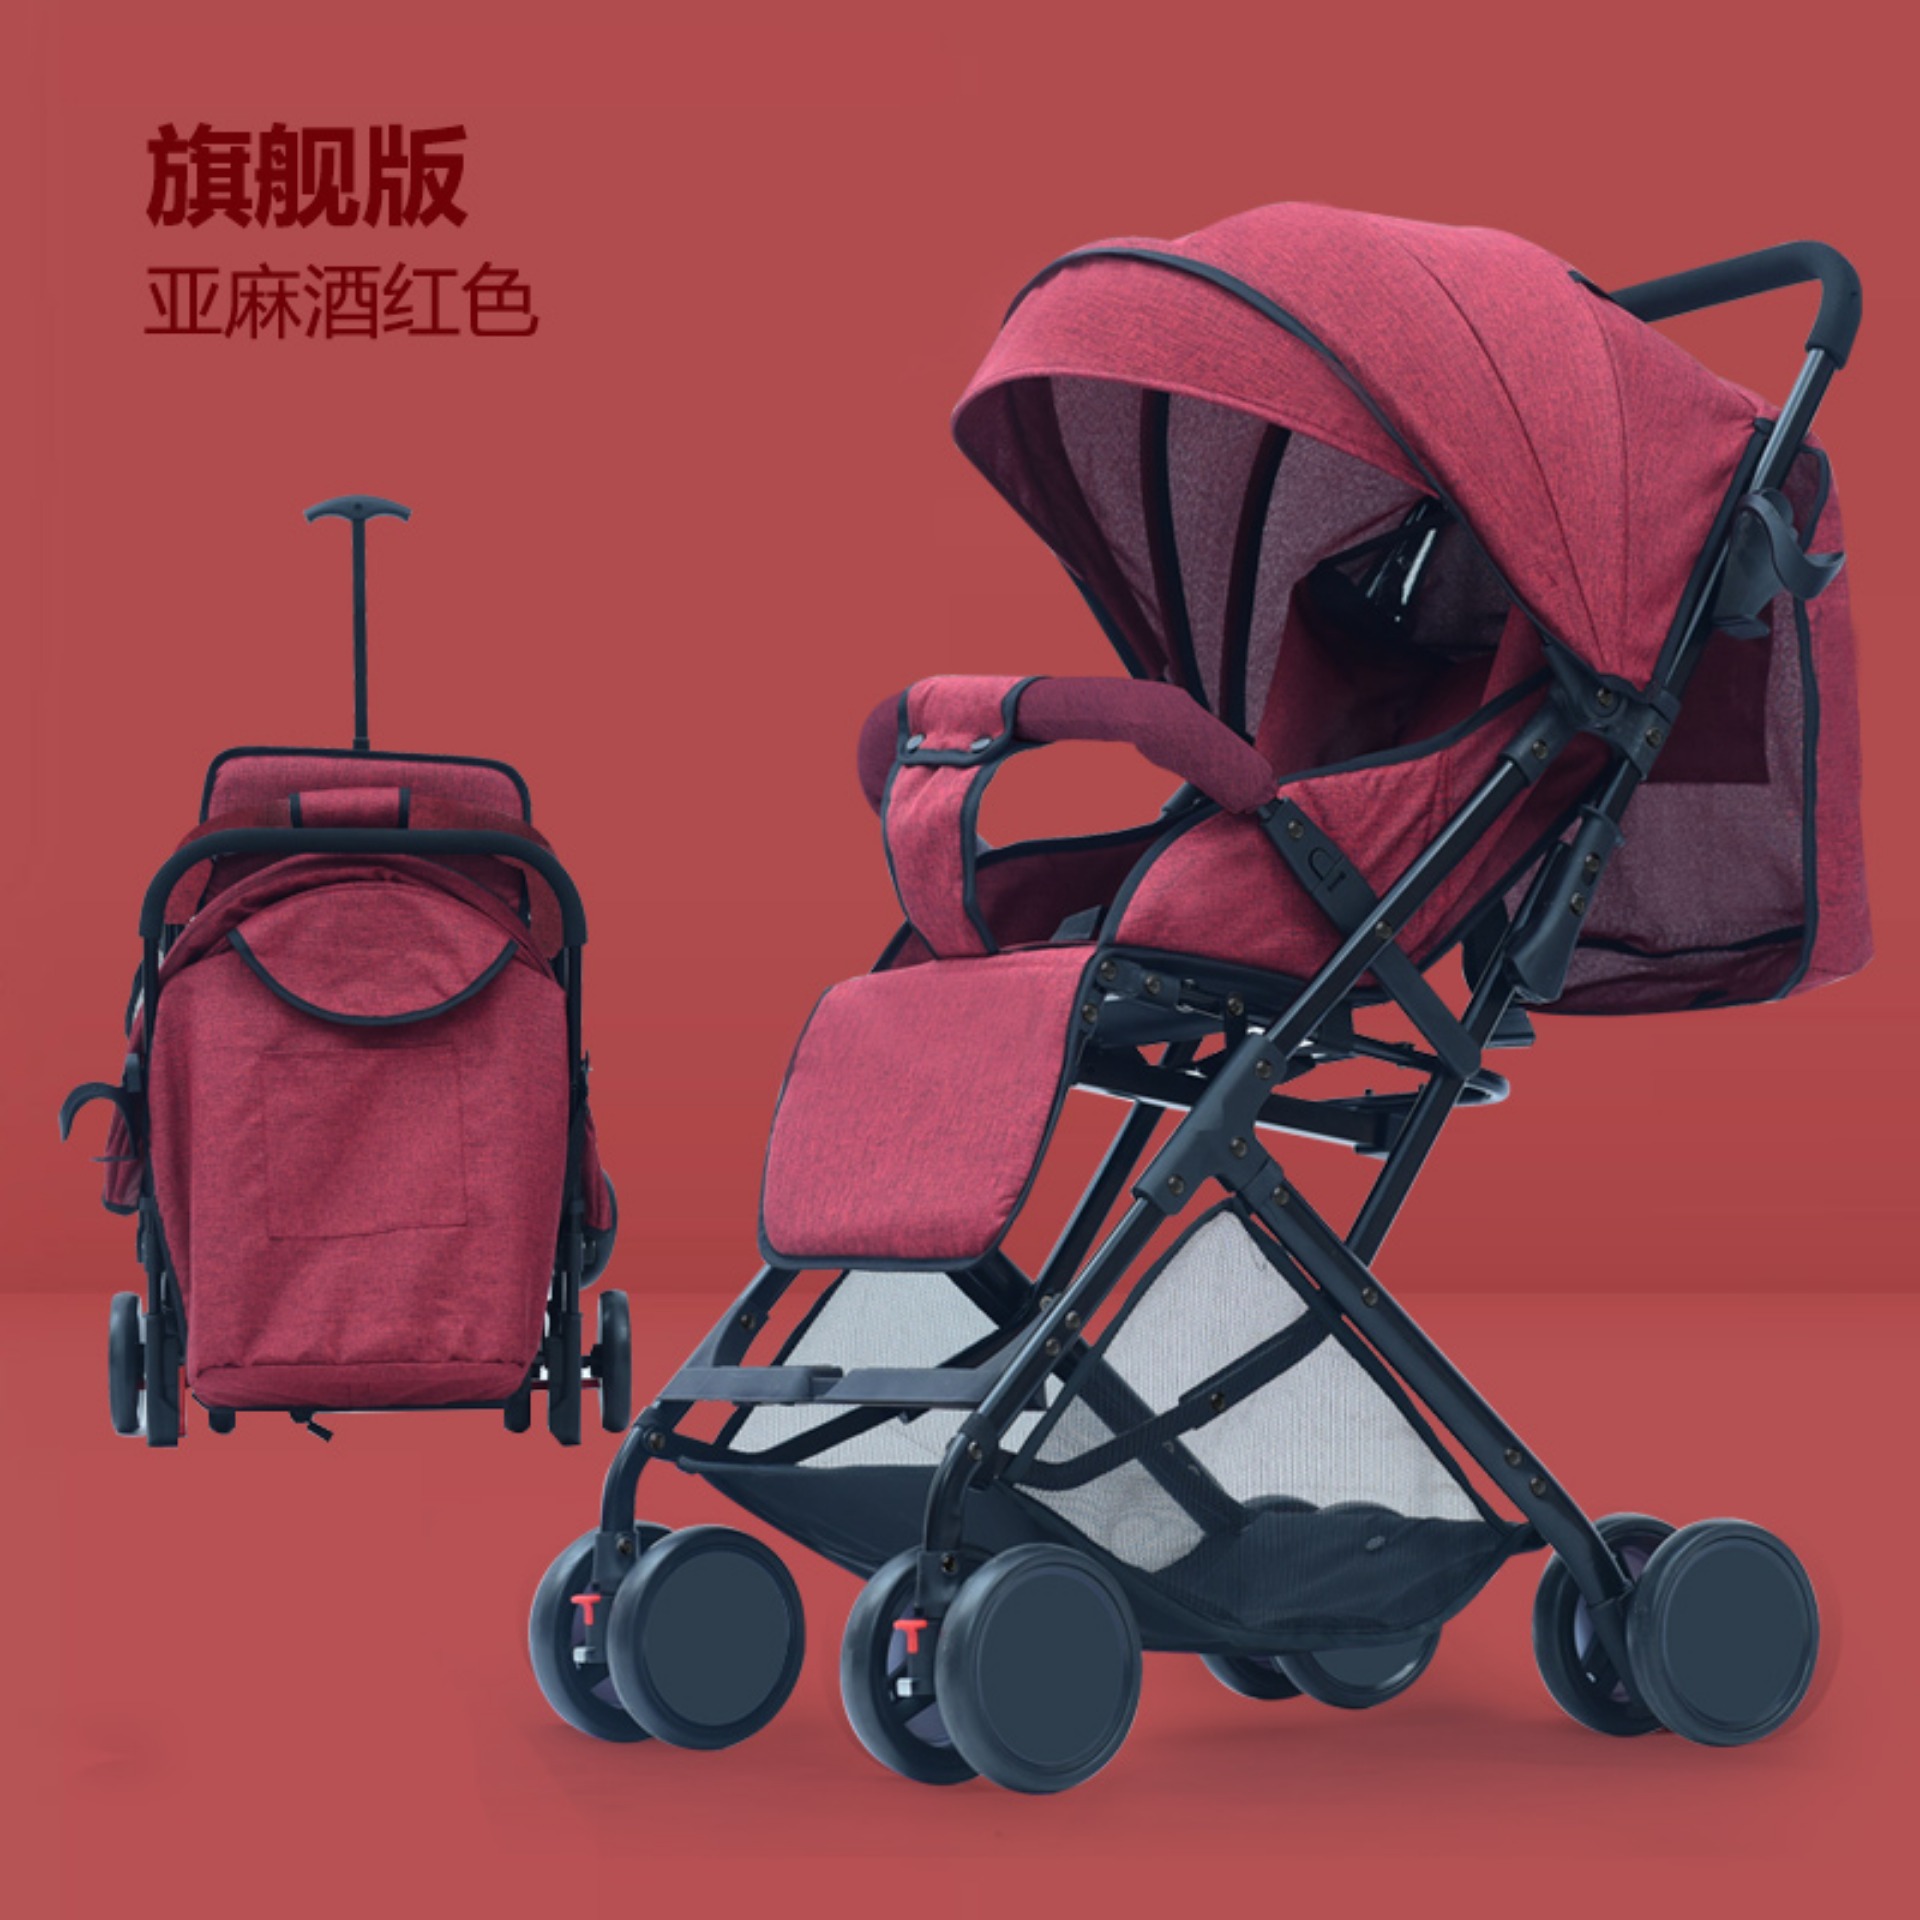 รถเข็นเด็ก stroller 6609 | HongThai OnlineShop รถเข็นเด็ก ปรับเบาะนั่งได้ 3 ระดับ พับเก็บเป็นกระเป๋าได้